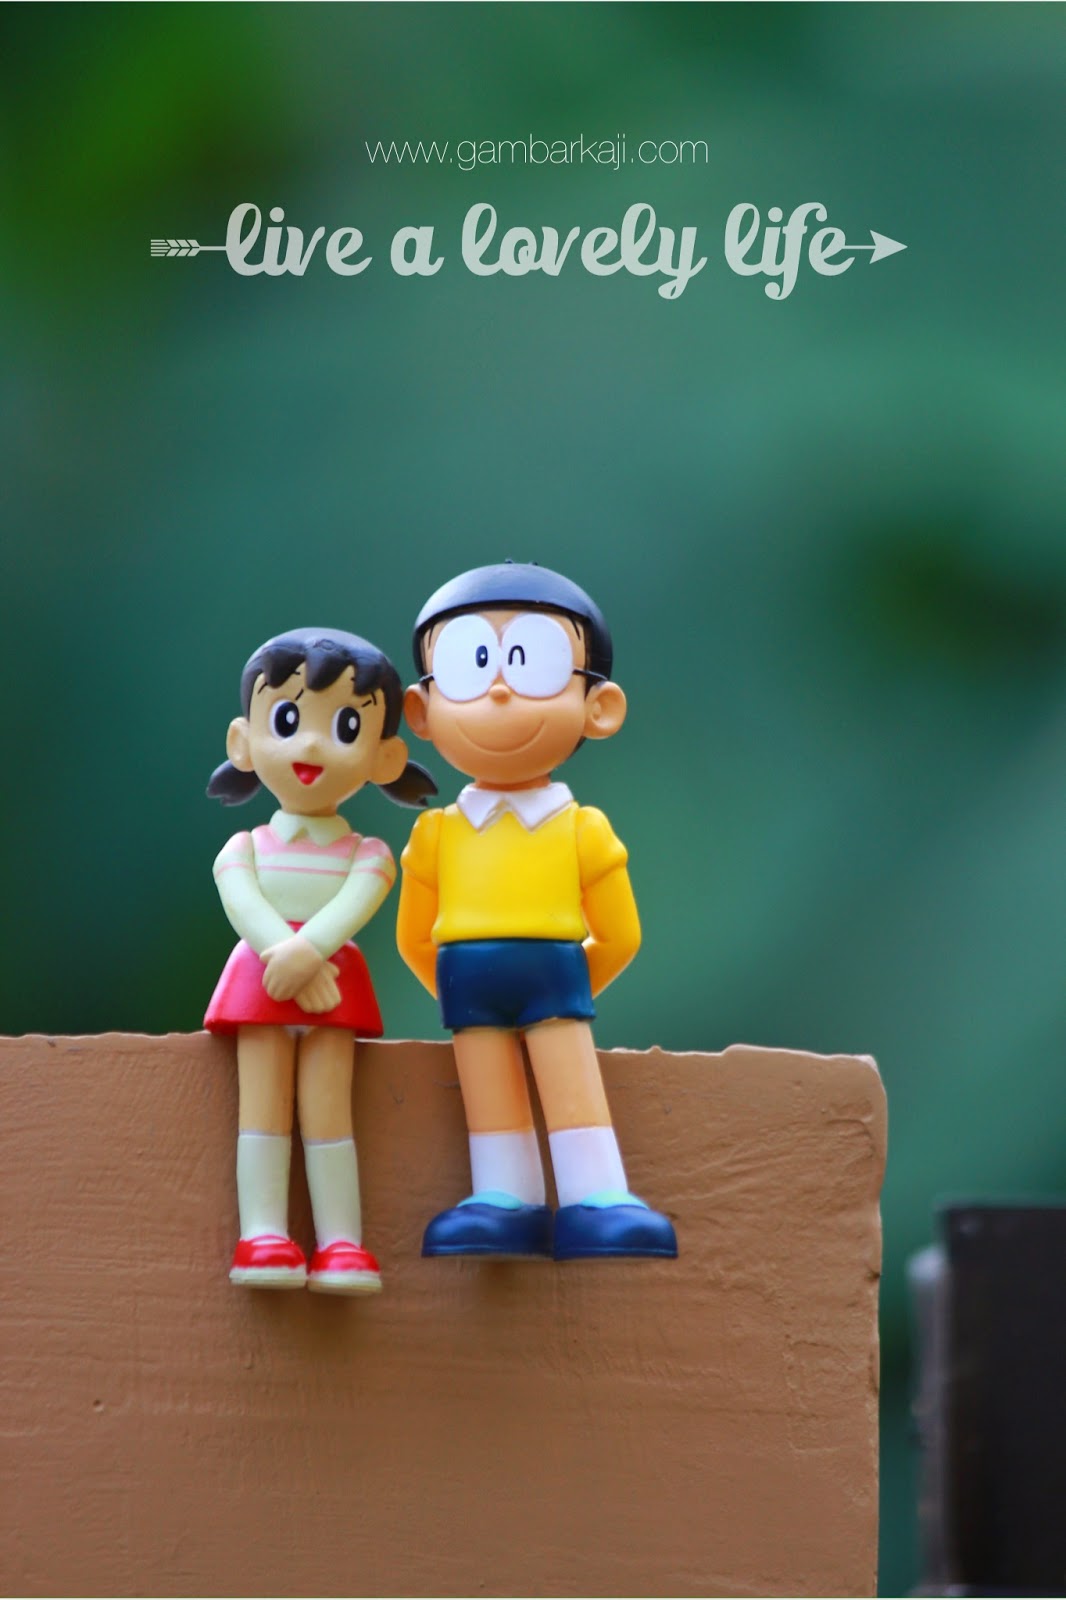 nobita shizuka love wallpapers,dessin animé,figurine,dessin animé,relation amicale,jouet